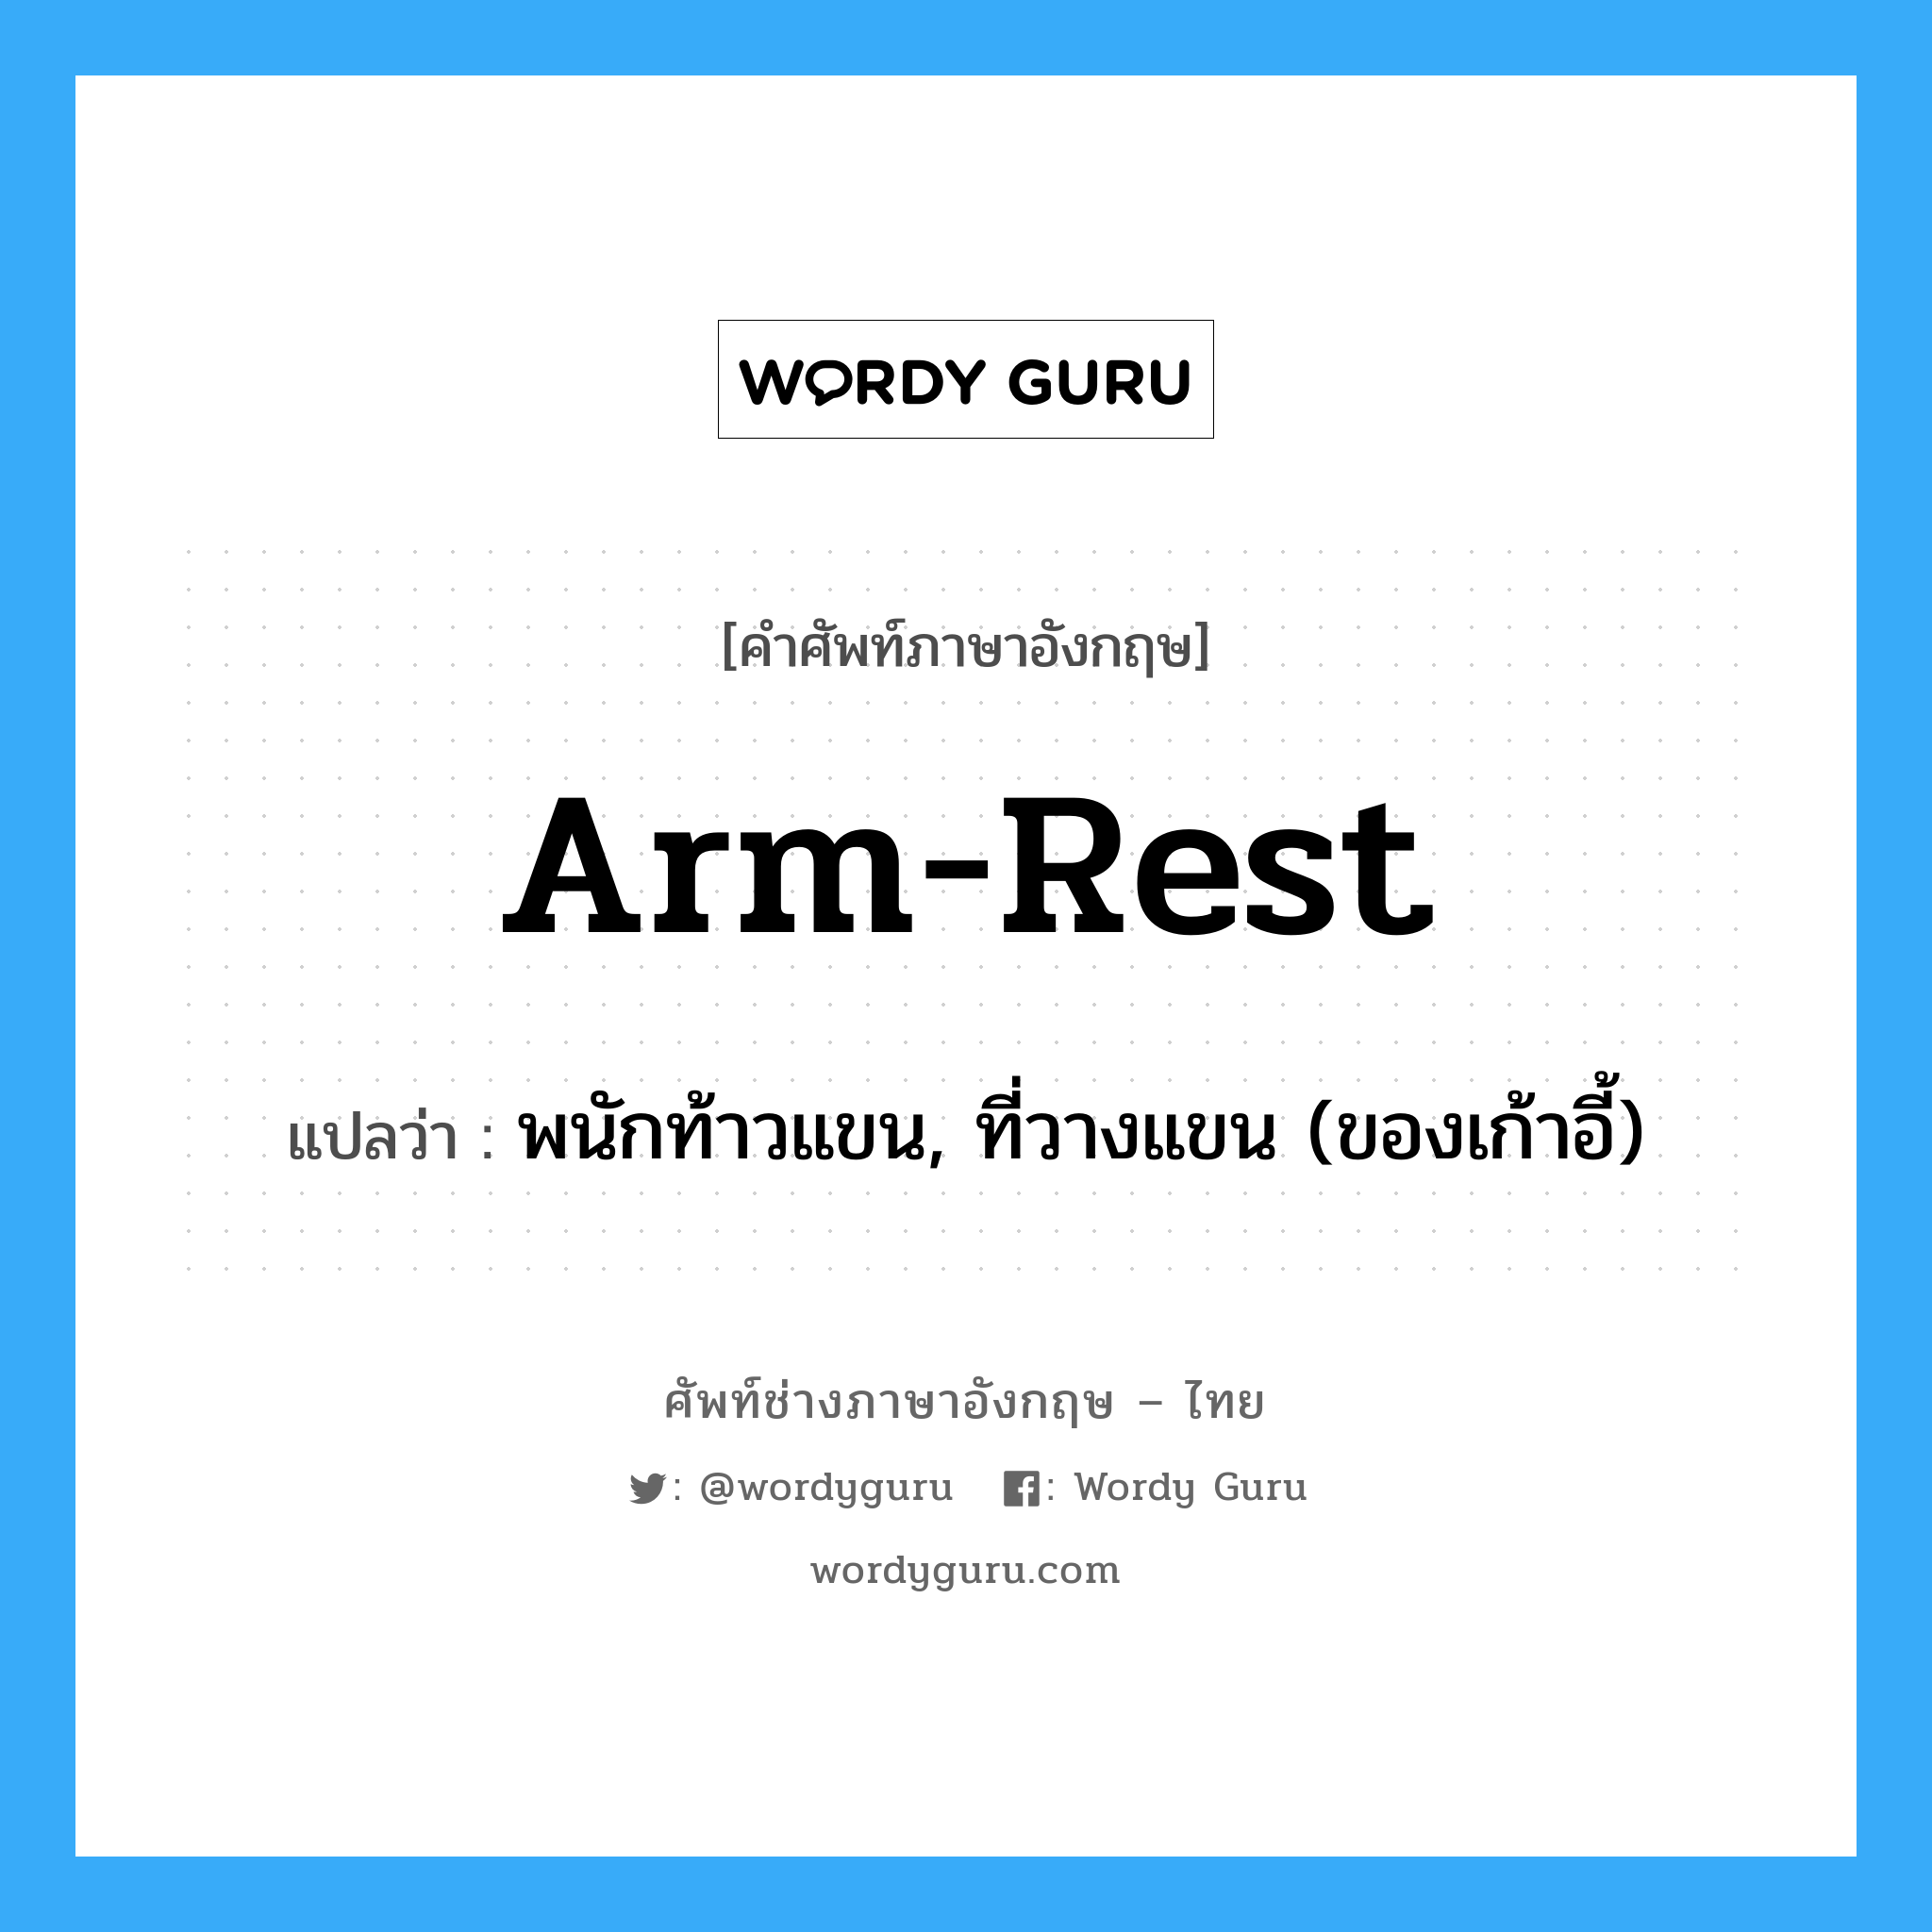 arm-rest แปลว่า?, คำศัพท์ช่างภาษาอังกฤษ - ไทย arm-rest คำศัพท์ภาษาอังกฤษ arm-rest แปลว่า พนักท้าวแขน, ที่วางแขน (ของเก้าอี้)